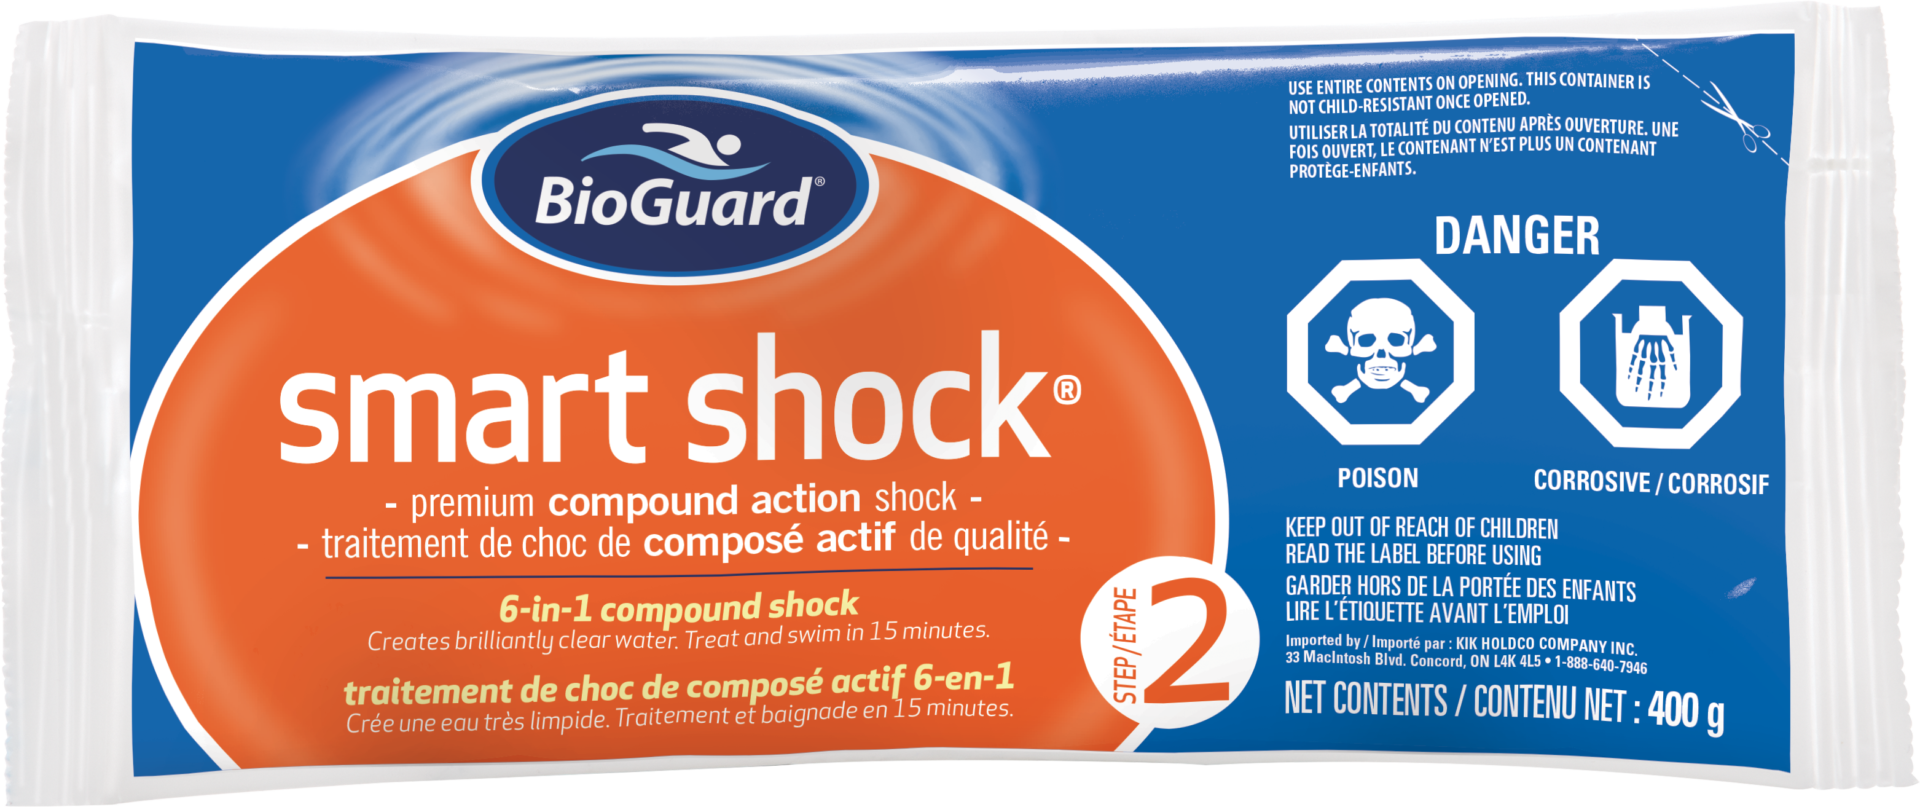 BioGuard Smart Shock 400g - BioGuard Smart Shock 400g